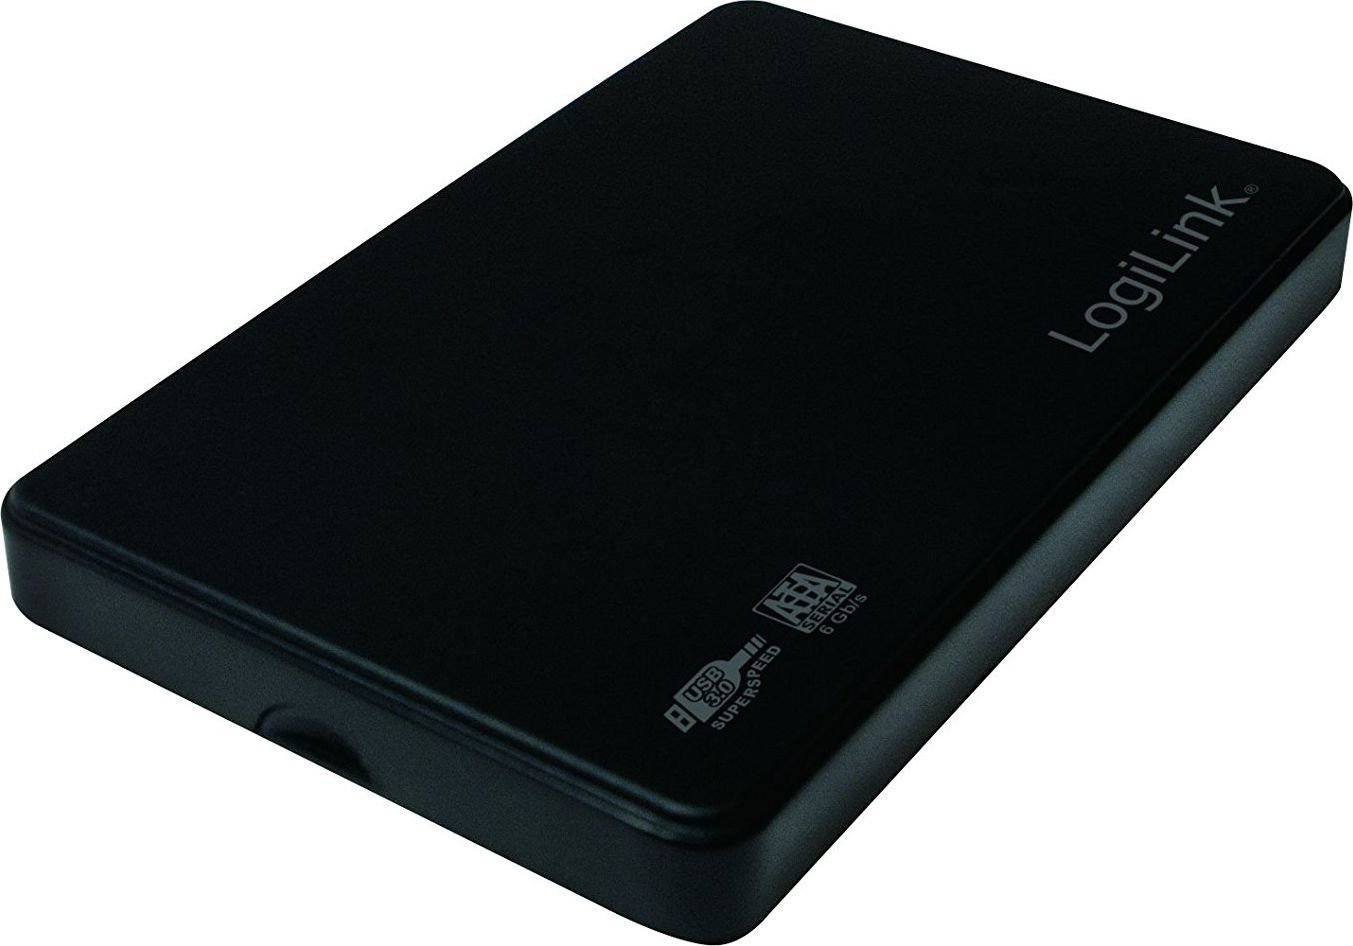 External HardDisk enclosure 2.5 Inch LOGILINK, SATA, USB 3.0, 6.35 cm, Black